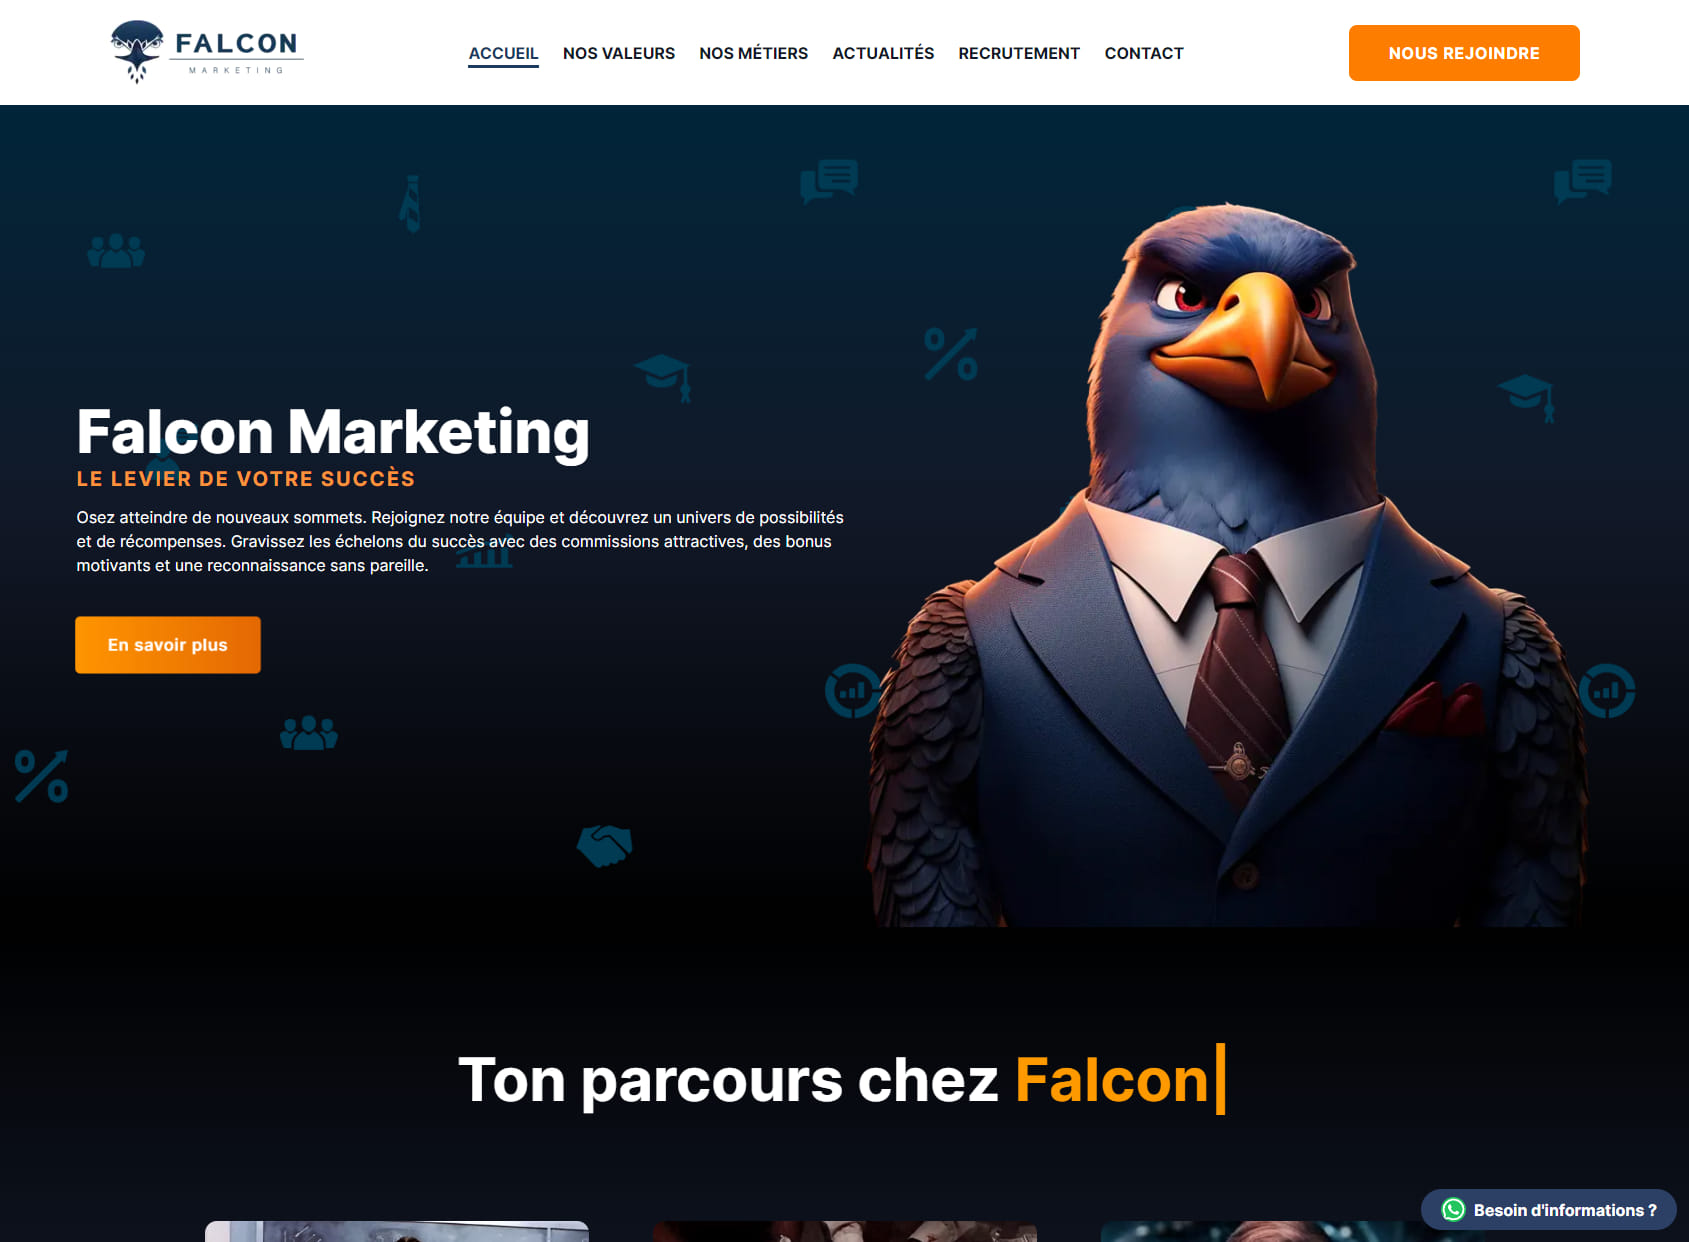 Falcon Marketing